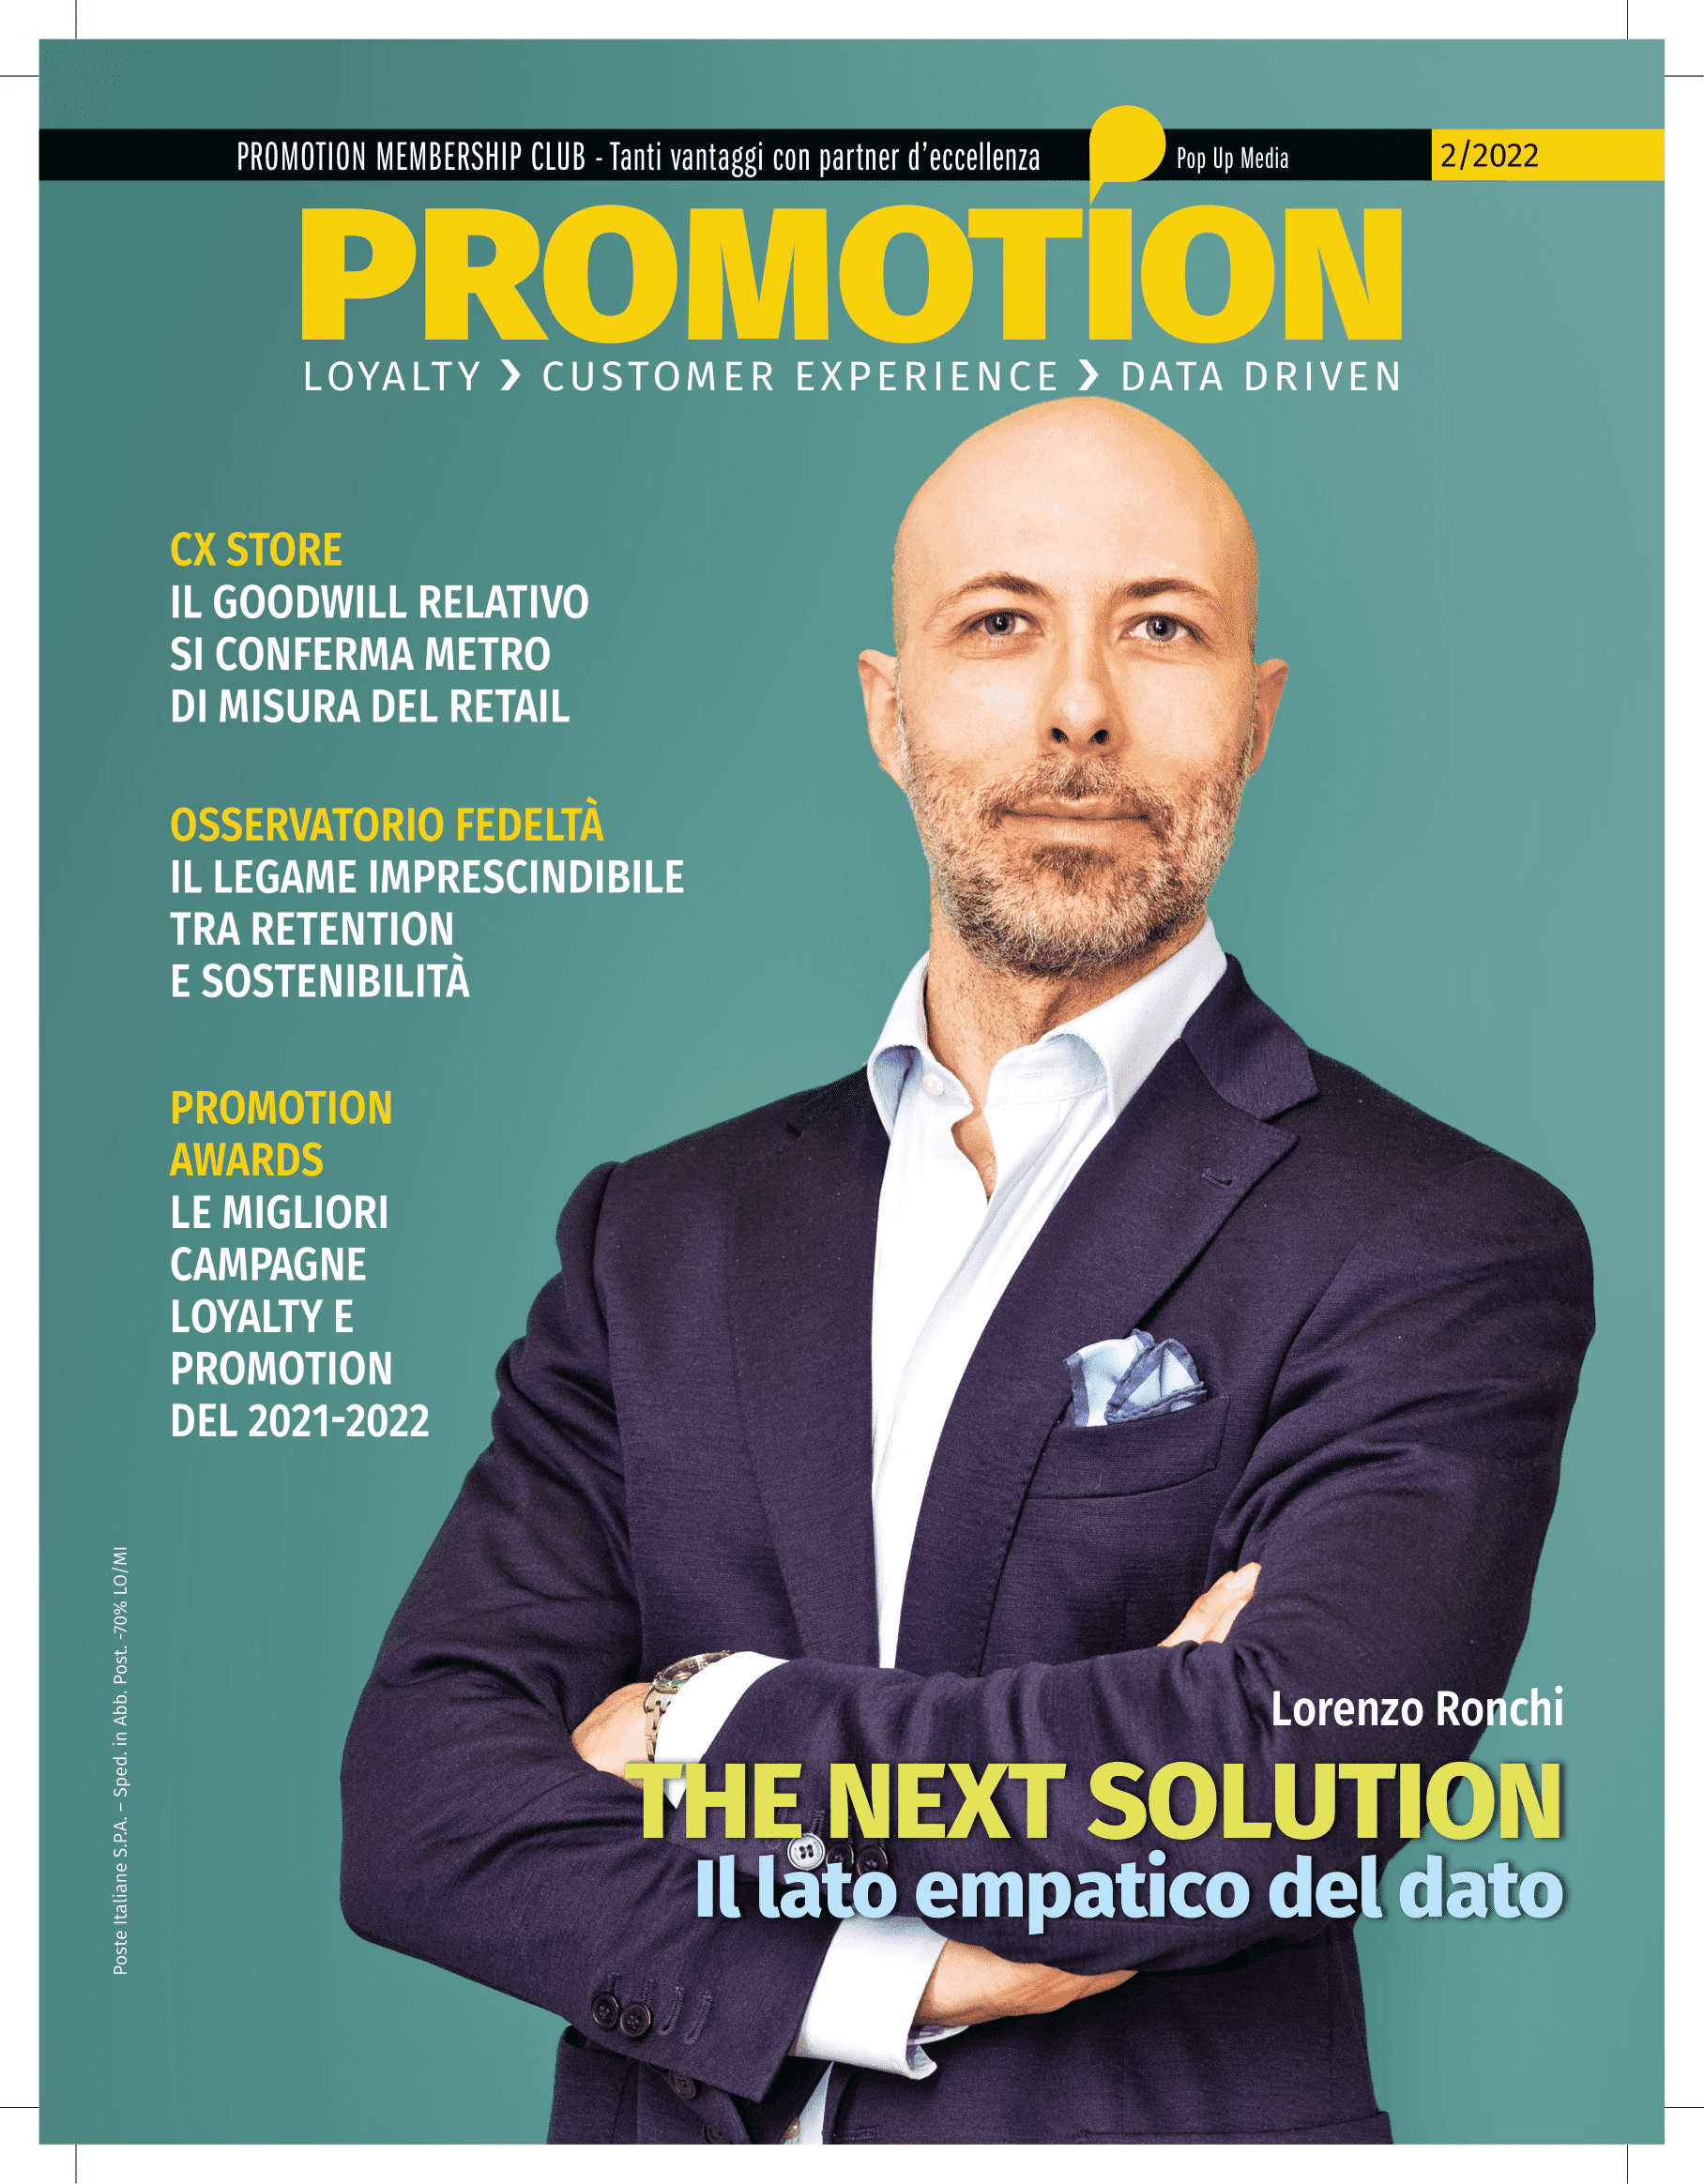 copertina-promotion-next-solution-approccio-lead-360